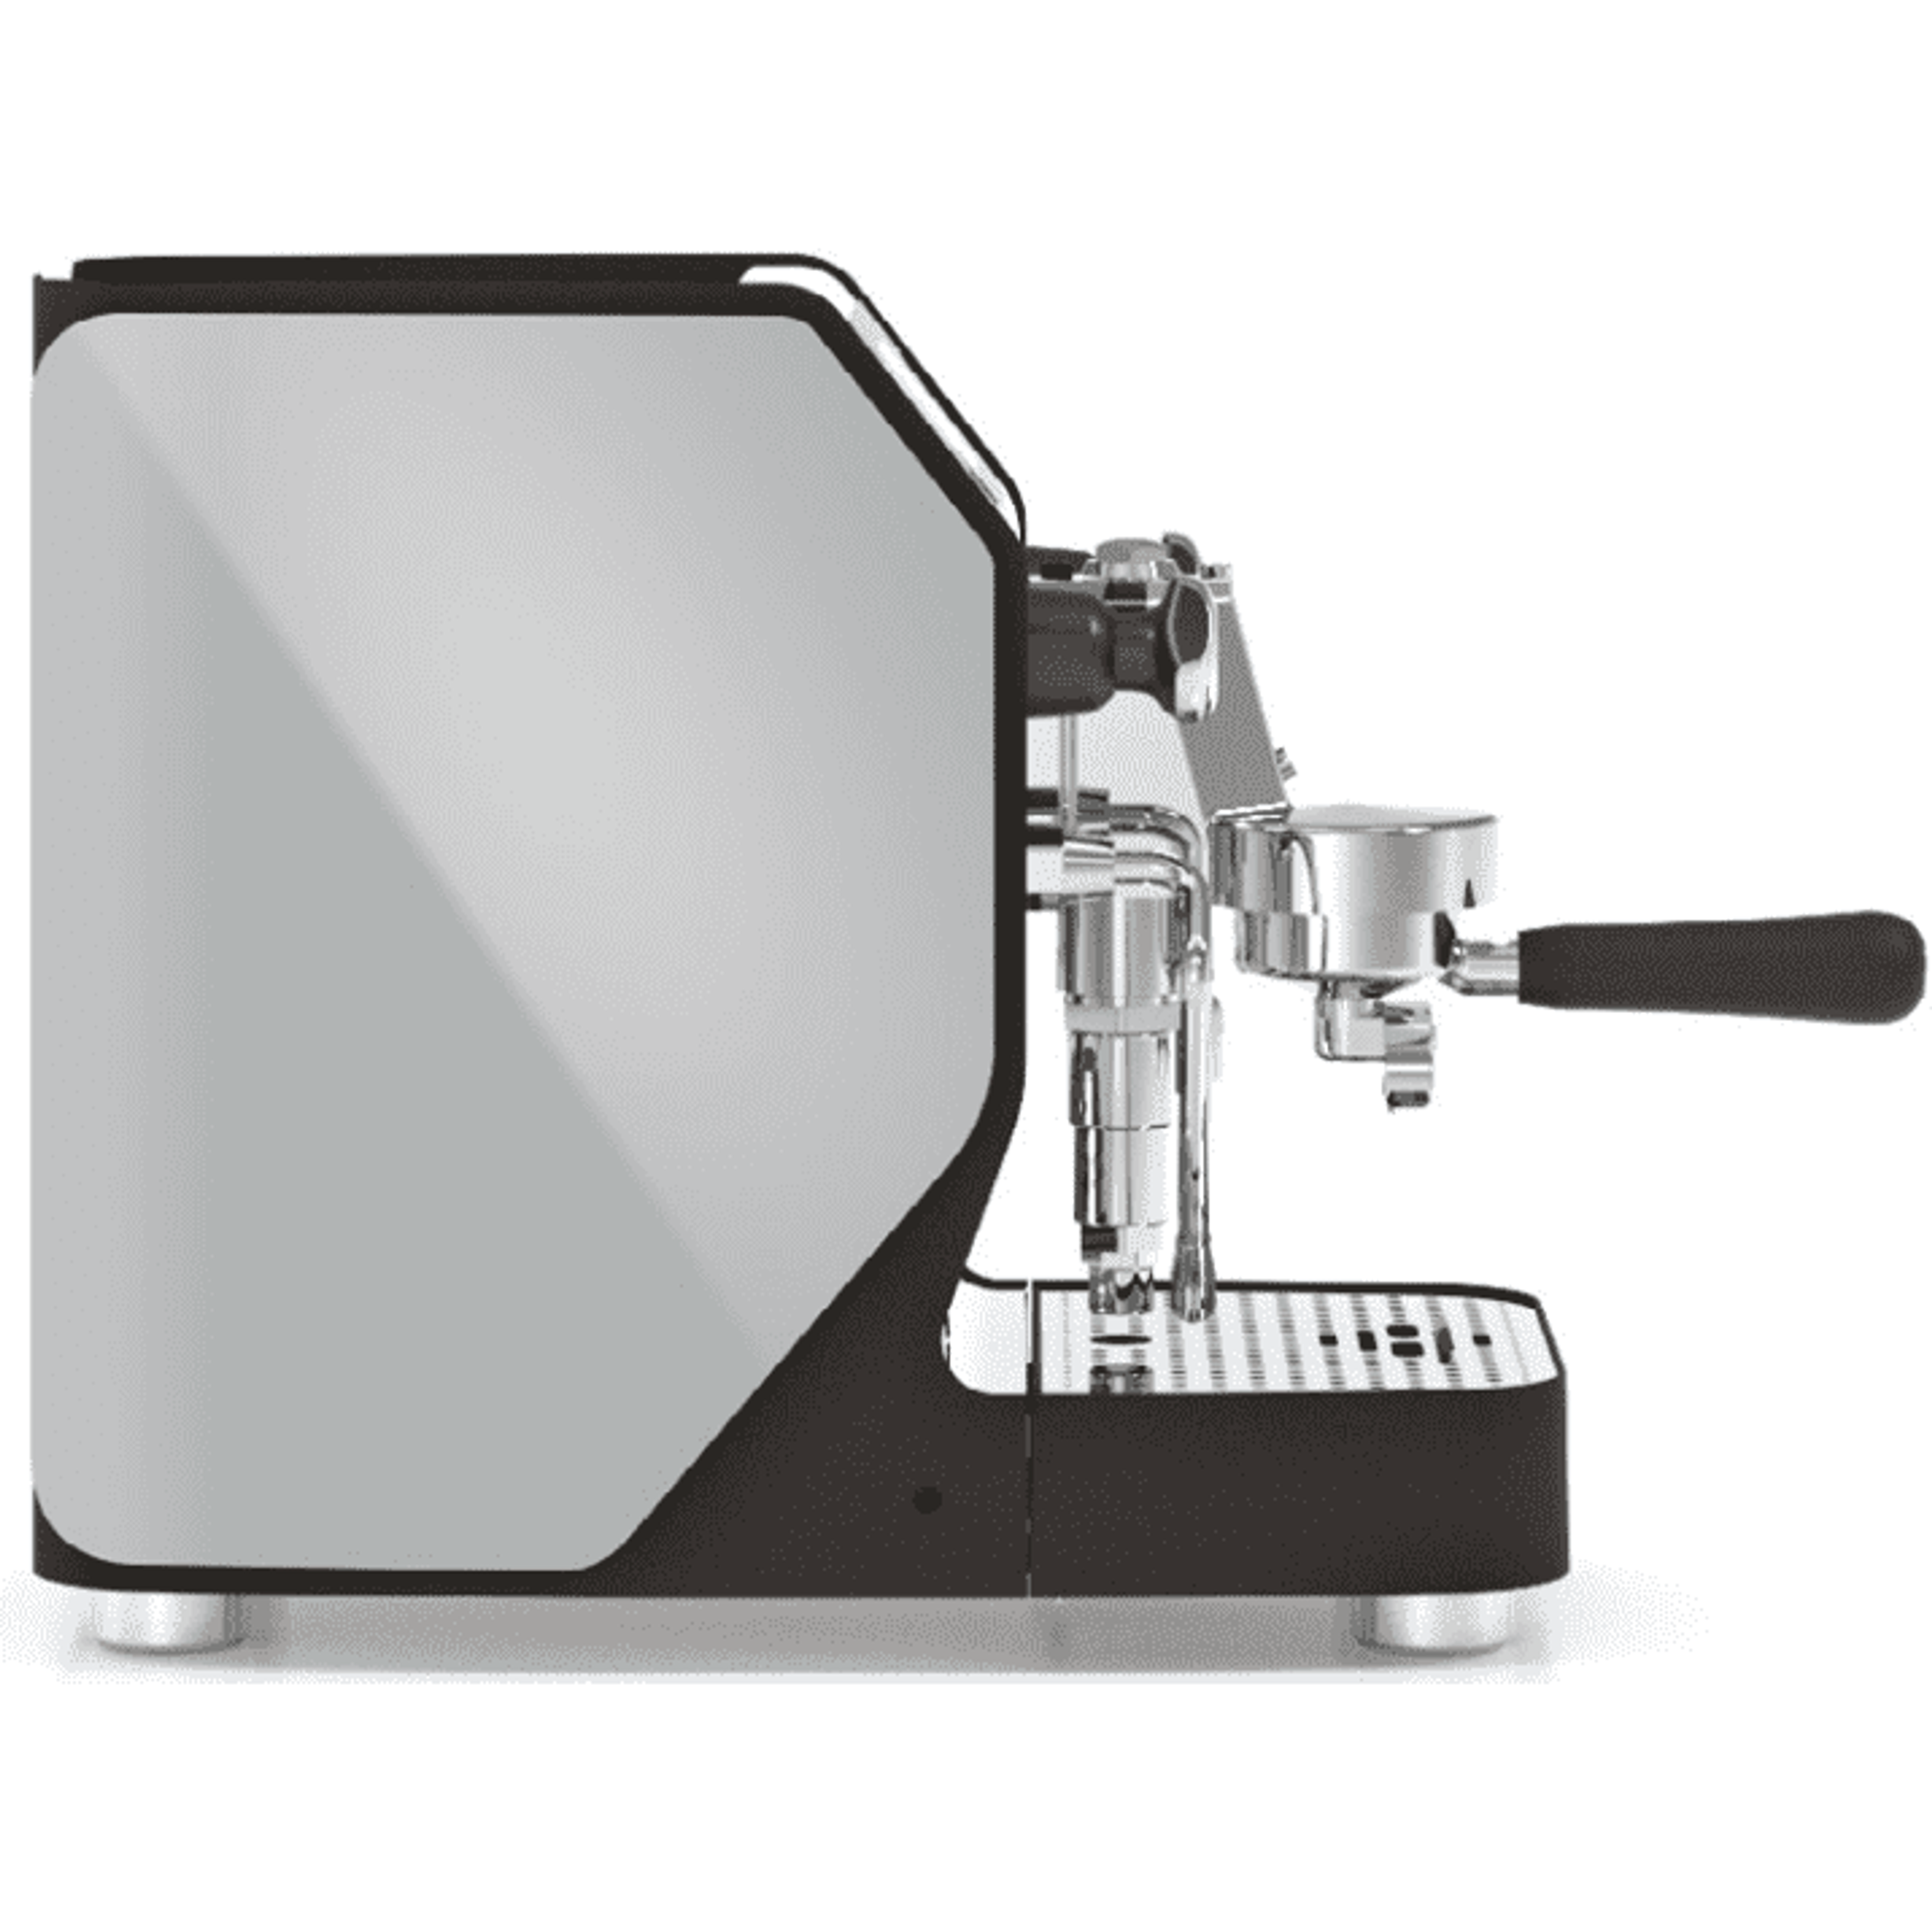 Vibiemme VBM New DOMOBAR Super Digital - Druckprofile, Dualboiler, Getriebepumpe, verschiedene Farben Espressomaschinen VBM Grau   - Rheinland.Coffee